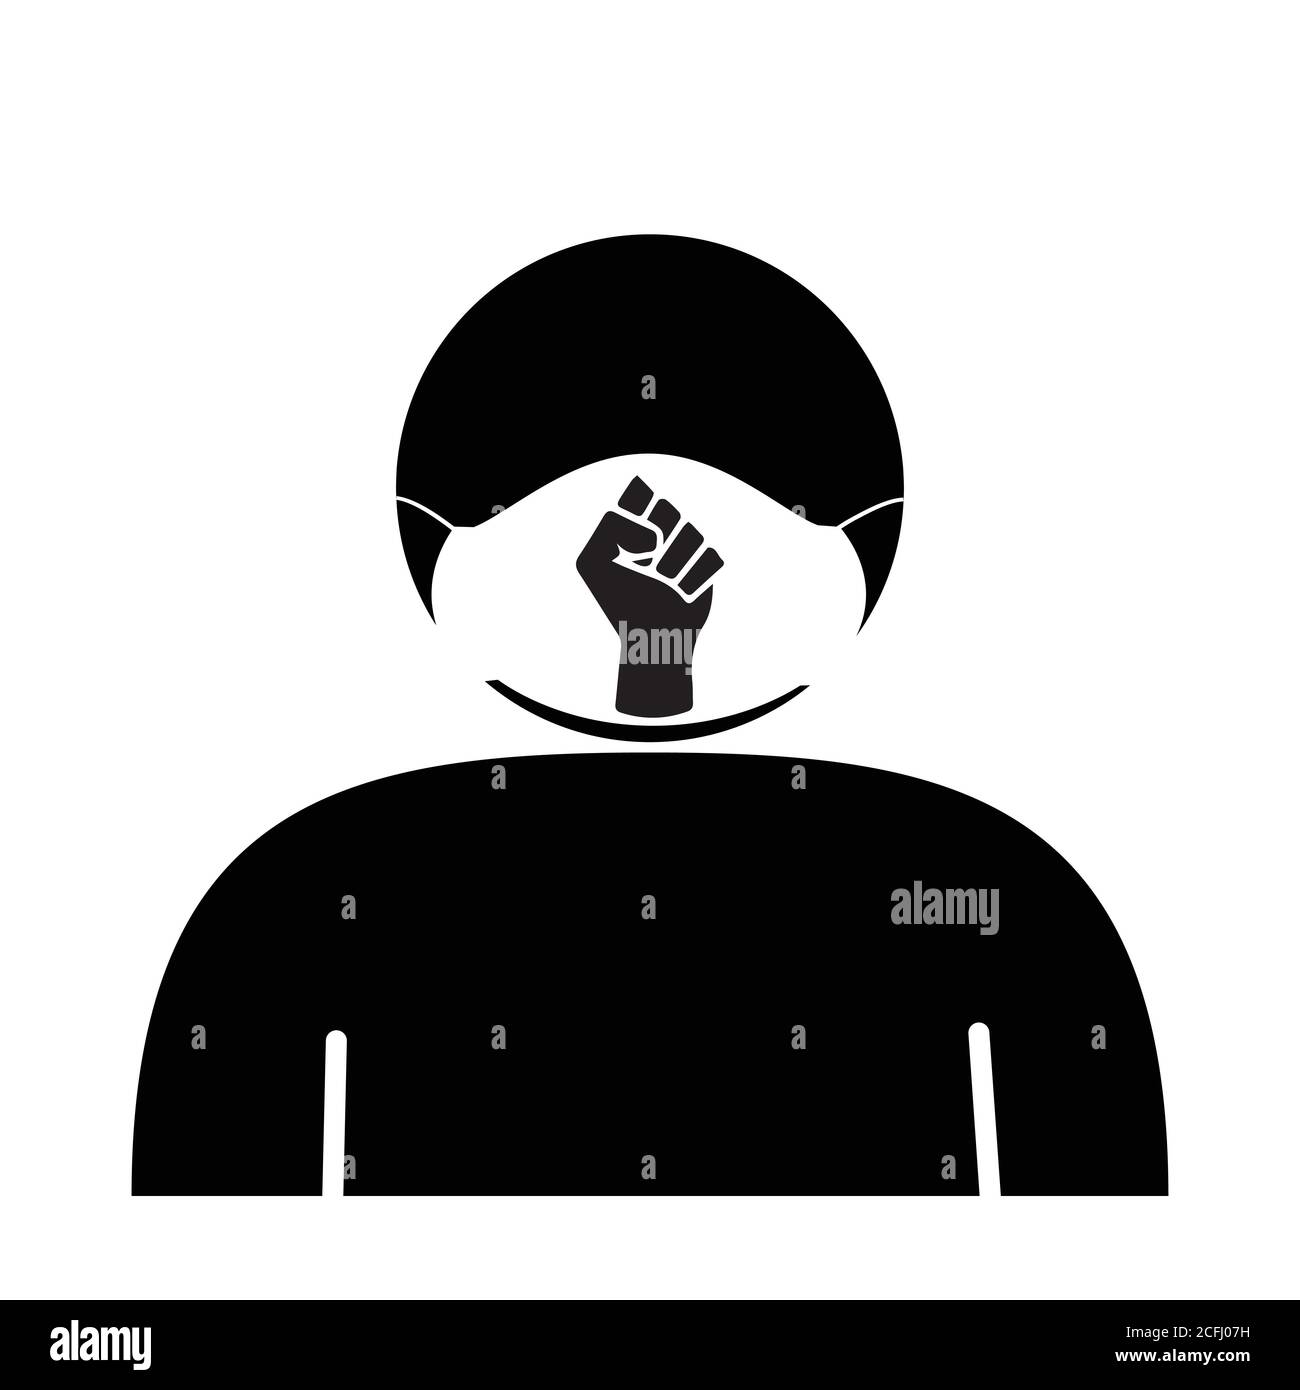 Bâton Figure masque de visage avec BLM Fist. Icône en noir et blanc représentant un personnage de bâton portant un revêtement facial avec le logo Black Lives Matter Fist. EP Illustration de Vecteur